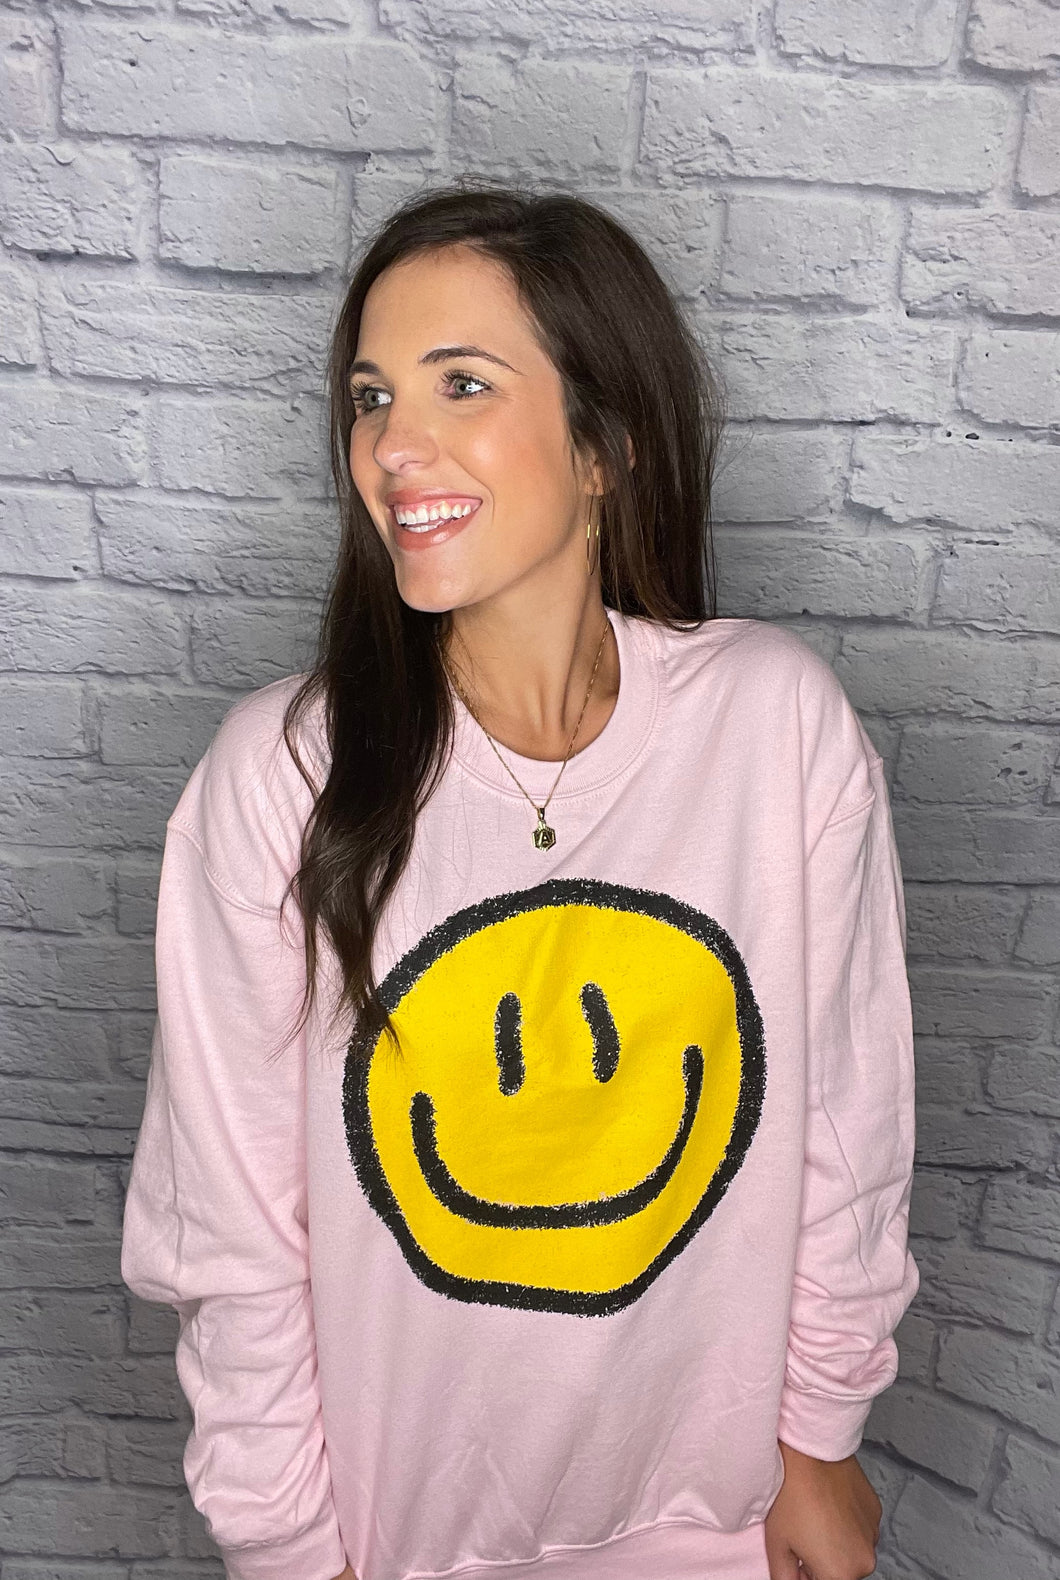 Pink Smiley Sweatshirt